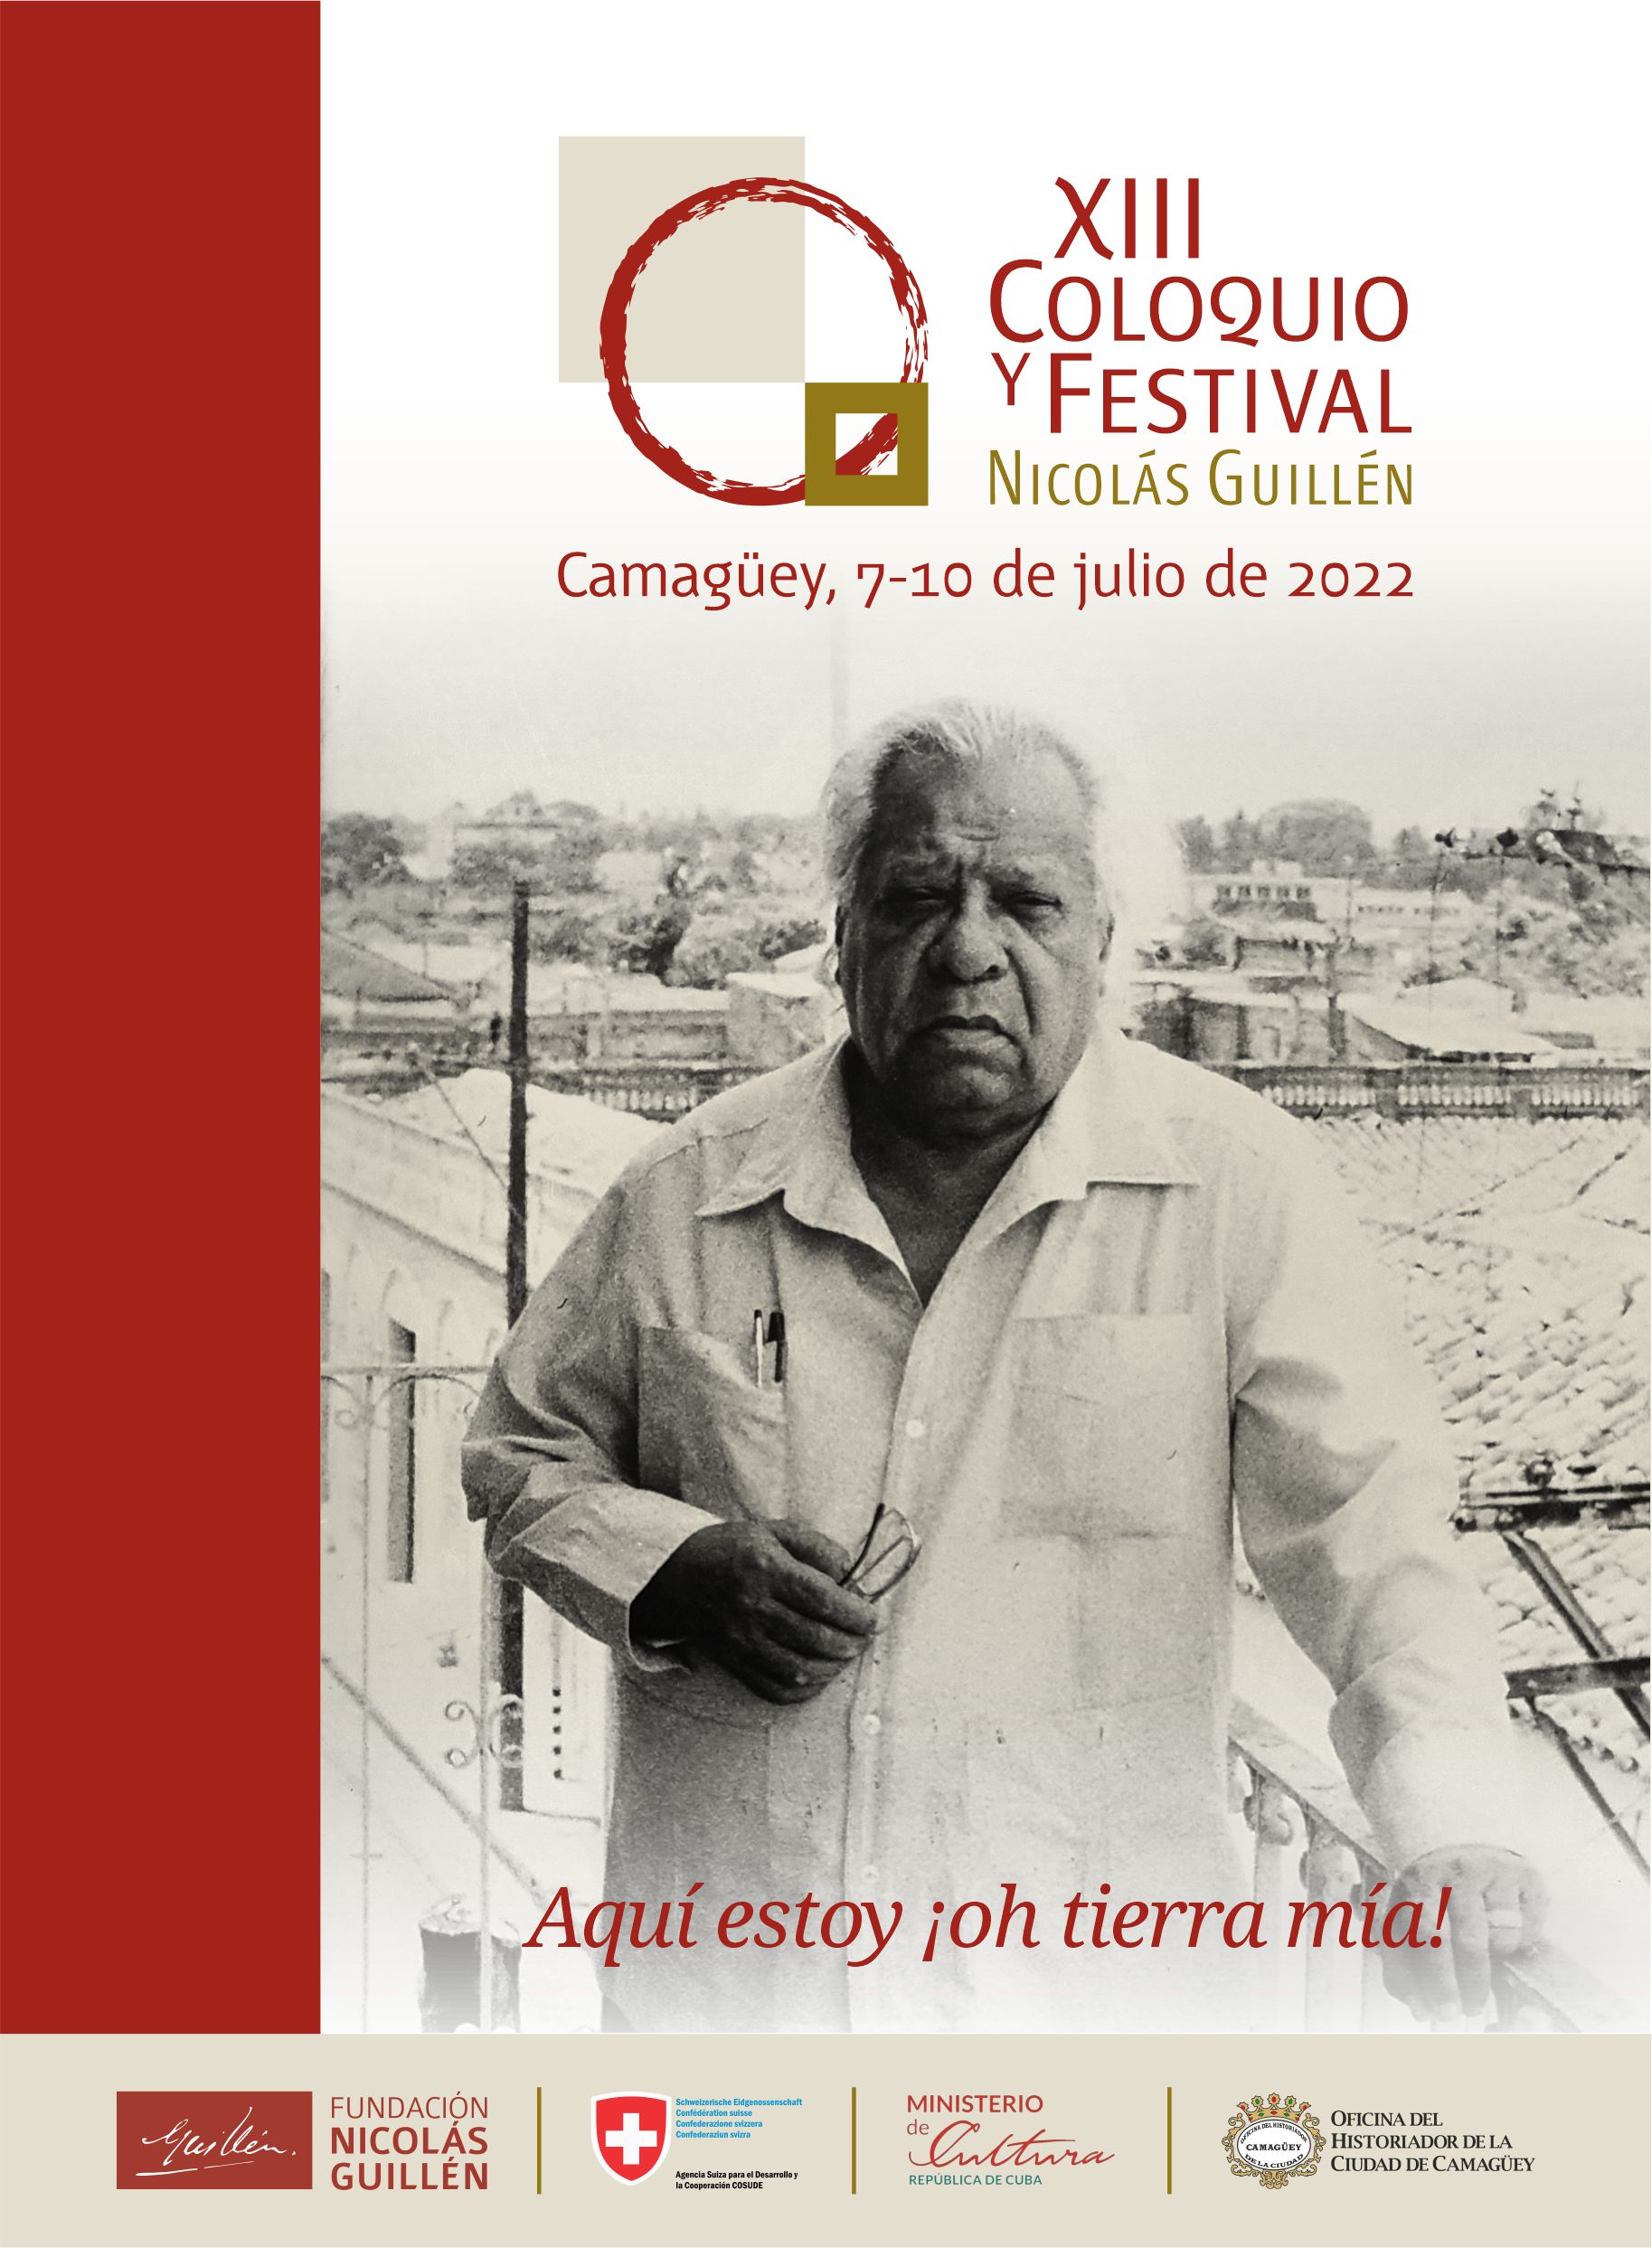 Simposio e Festival di Nicholas Guillen, uno spazio essenziale per Camaguey